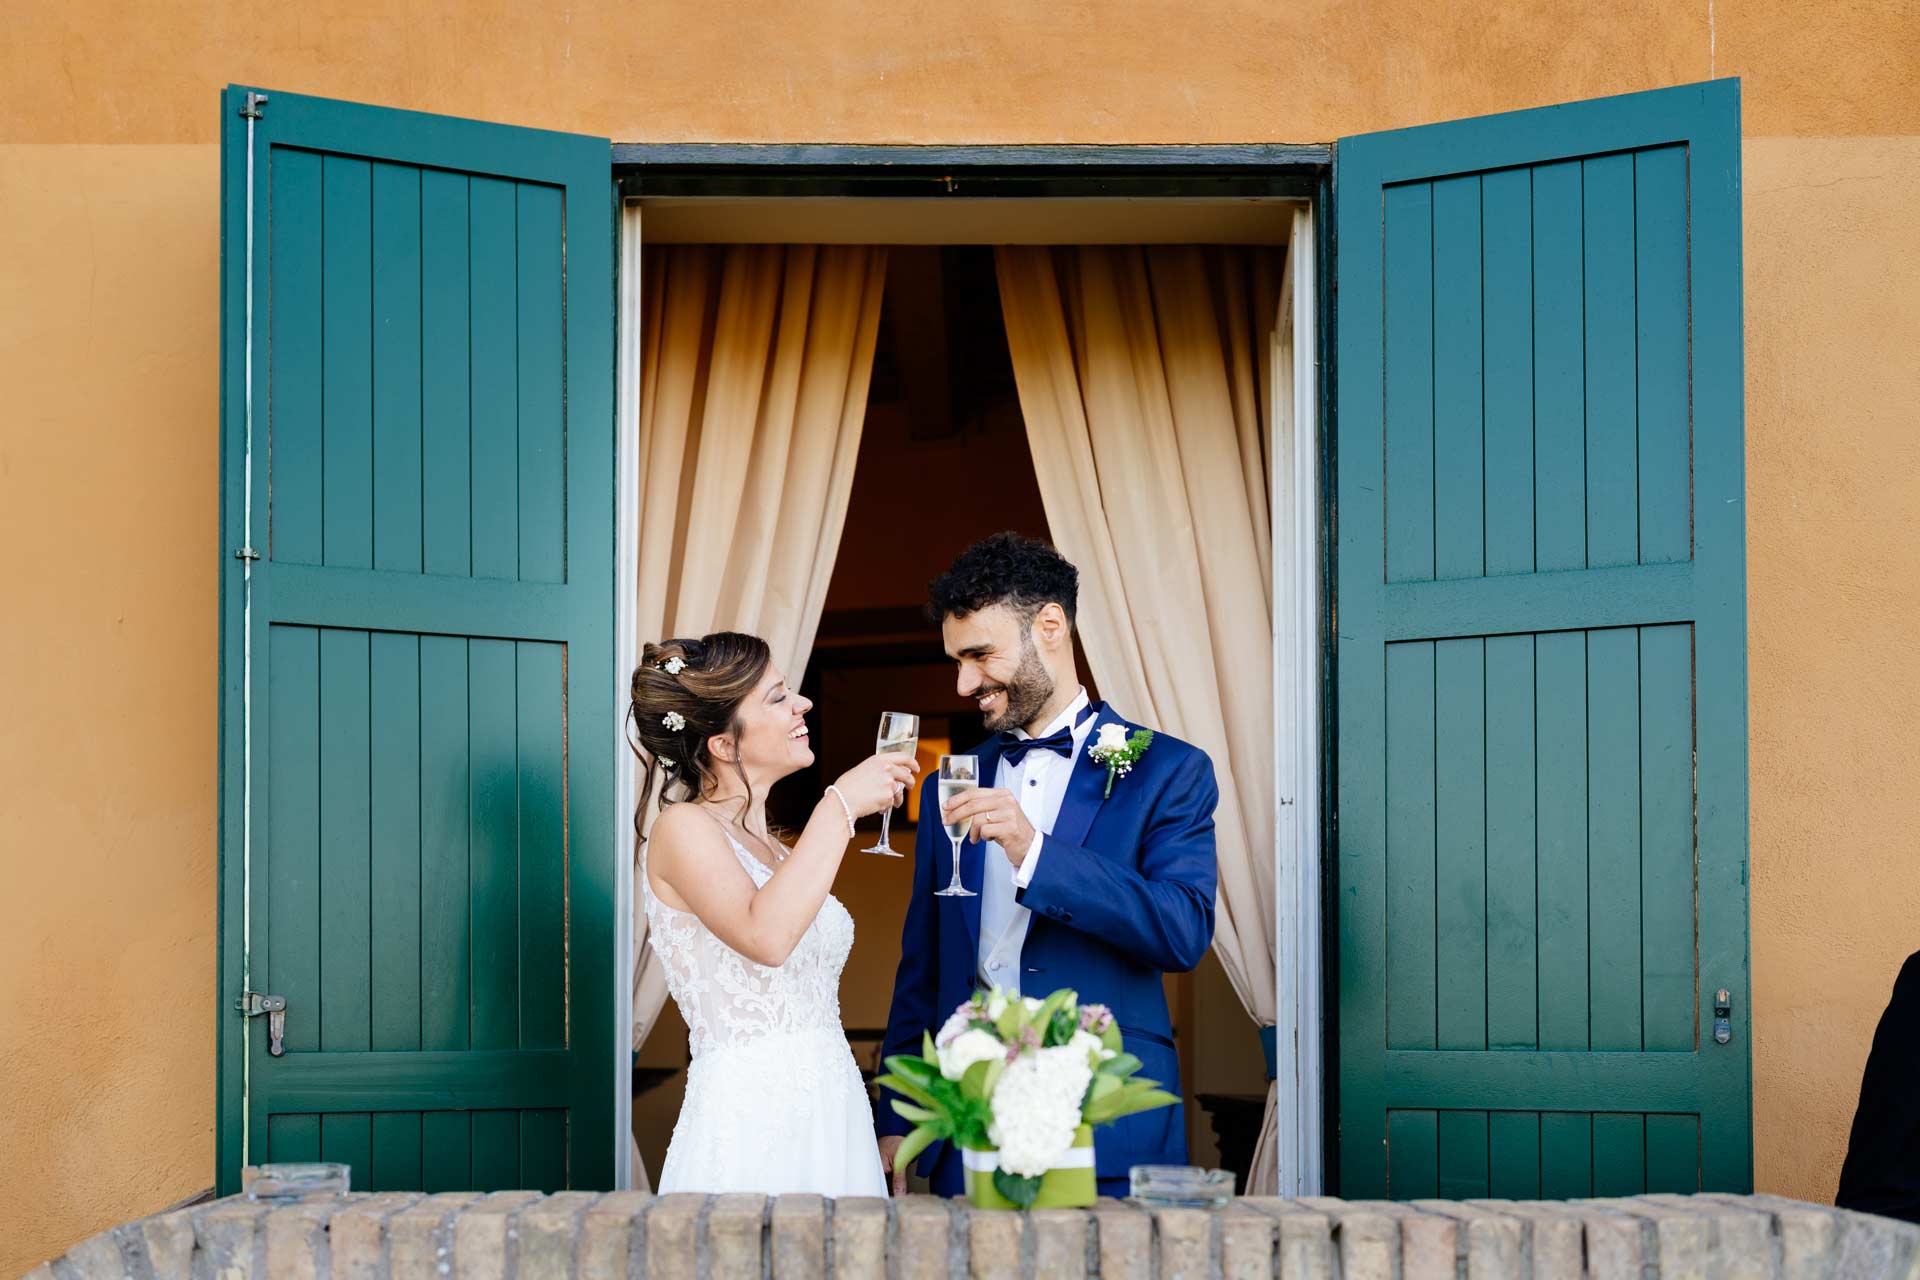 Sposi durante il ricevimento di Matrimonio a Roma nel Castello di Decima